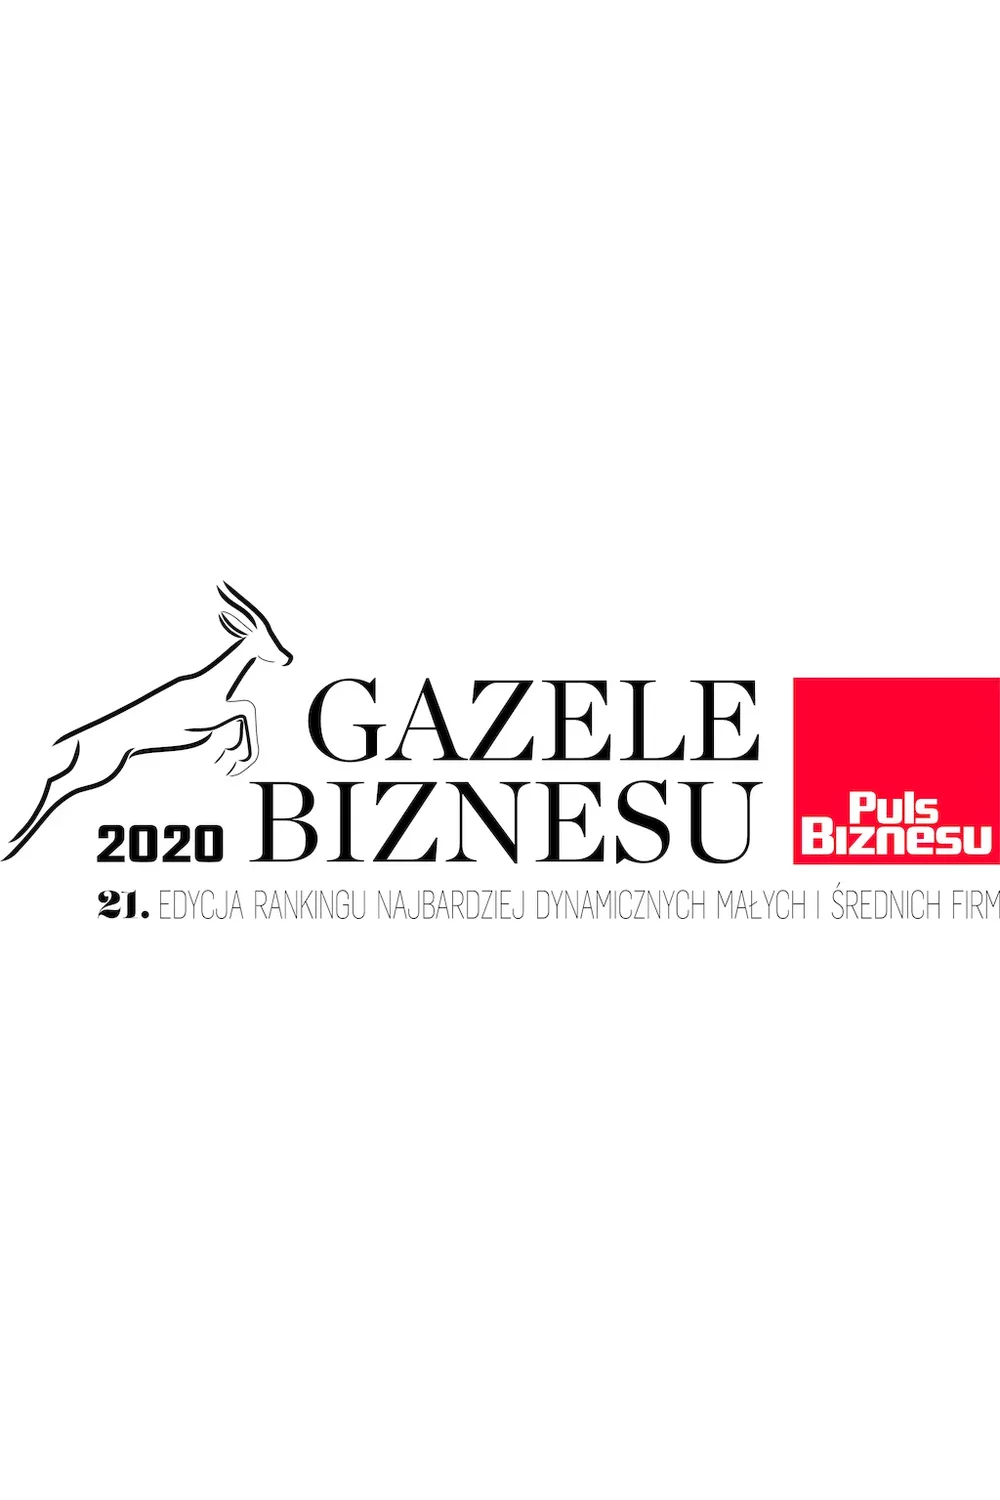 Gazele biznesu 2020 - zdjęcie